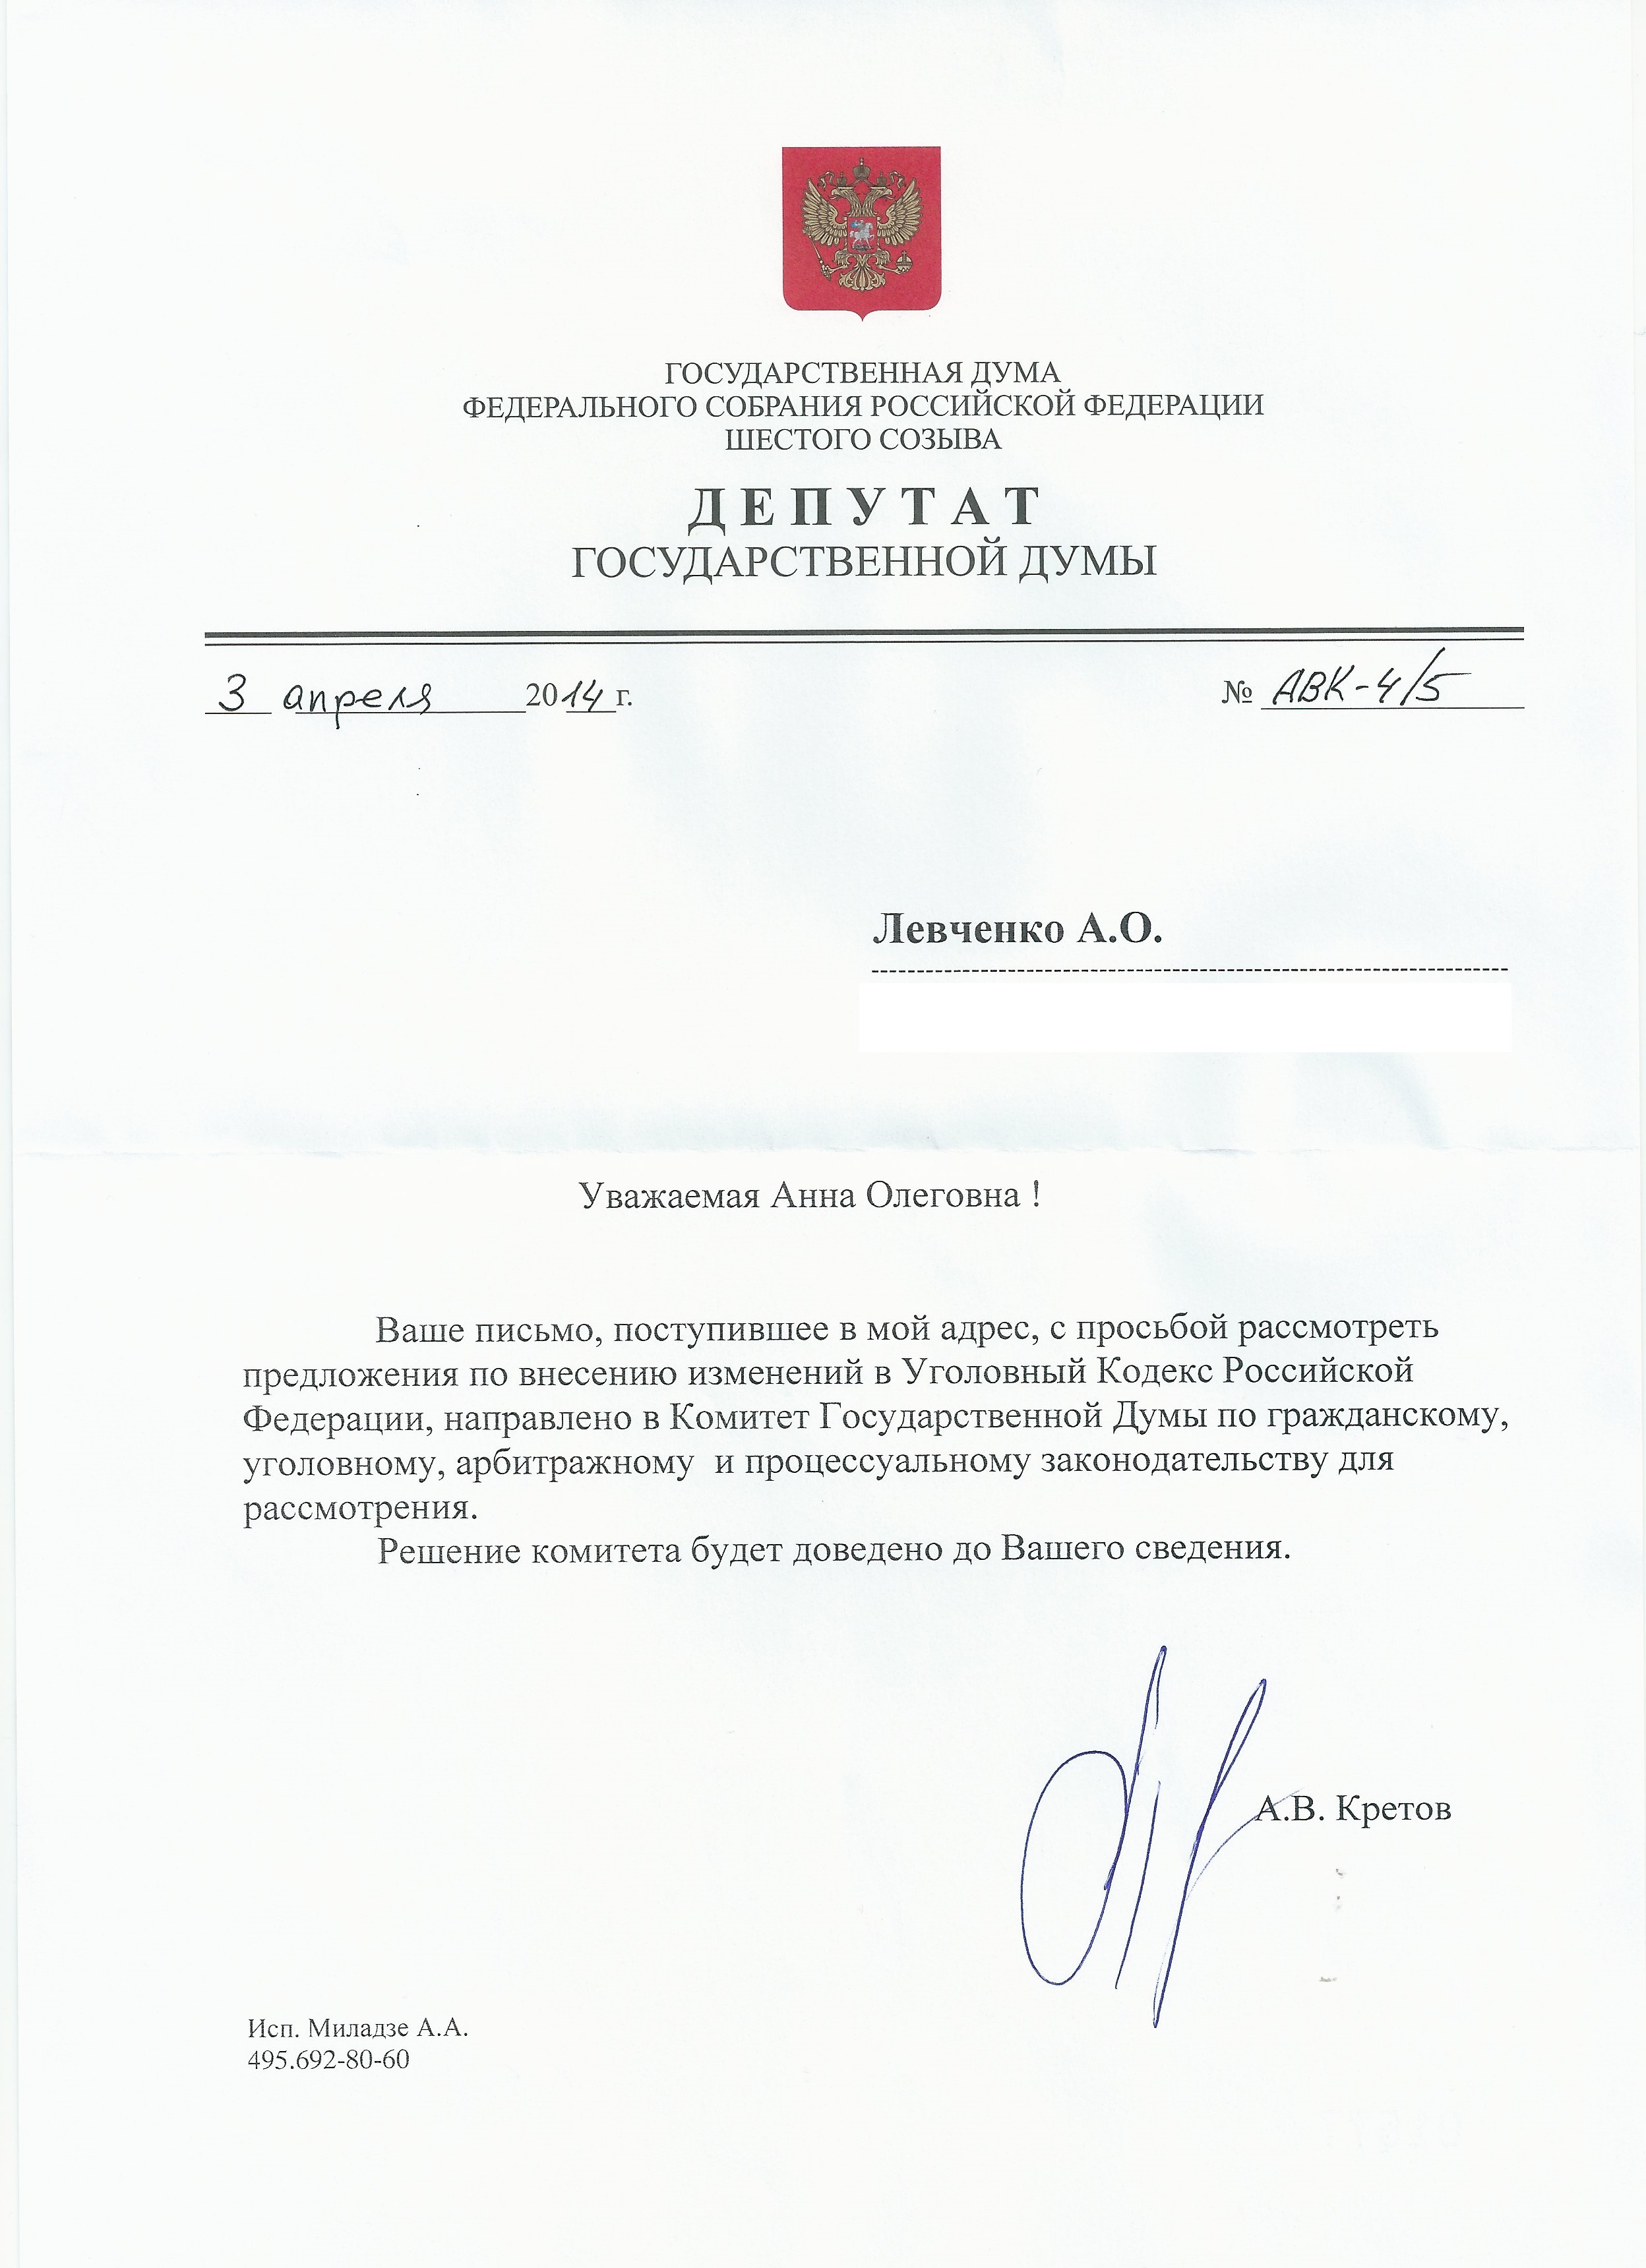 Депутат Госдумы Кретов А.В. ответил на наше обращение по поводу внесения изменений в Уголовный кодекс РФ.